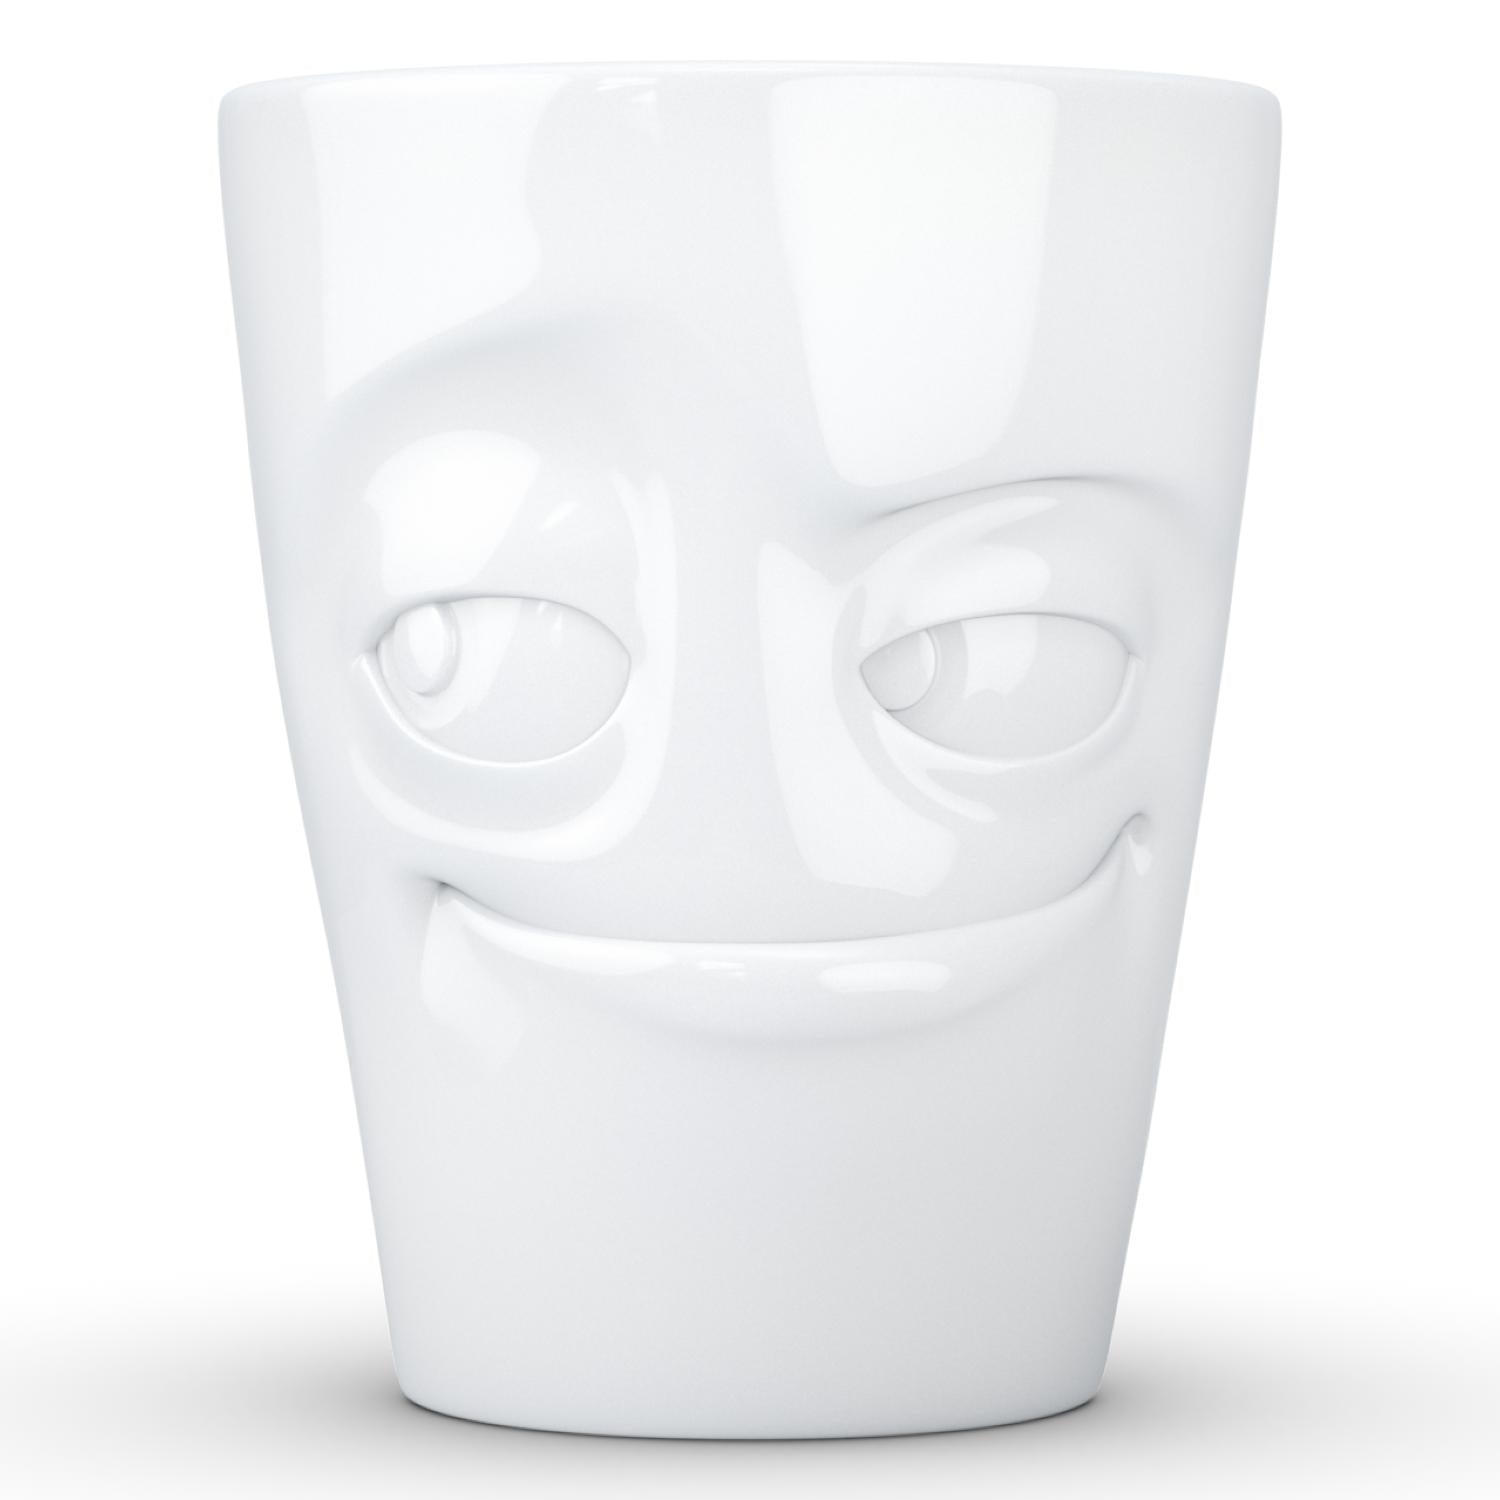 Detecteren Ik was mijn kleren Edelsteen Coffee Mug with Handle, Impish Face – FIFTYEIGHT Products